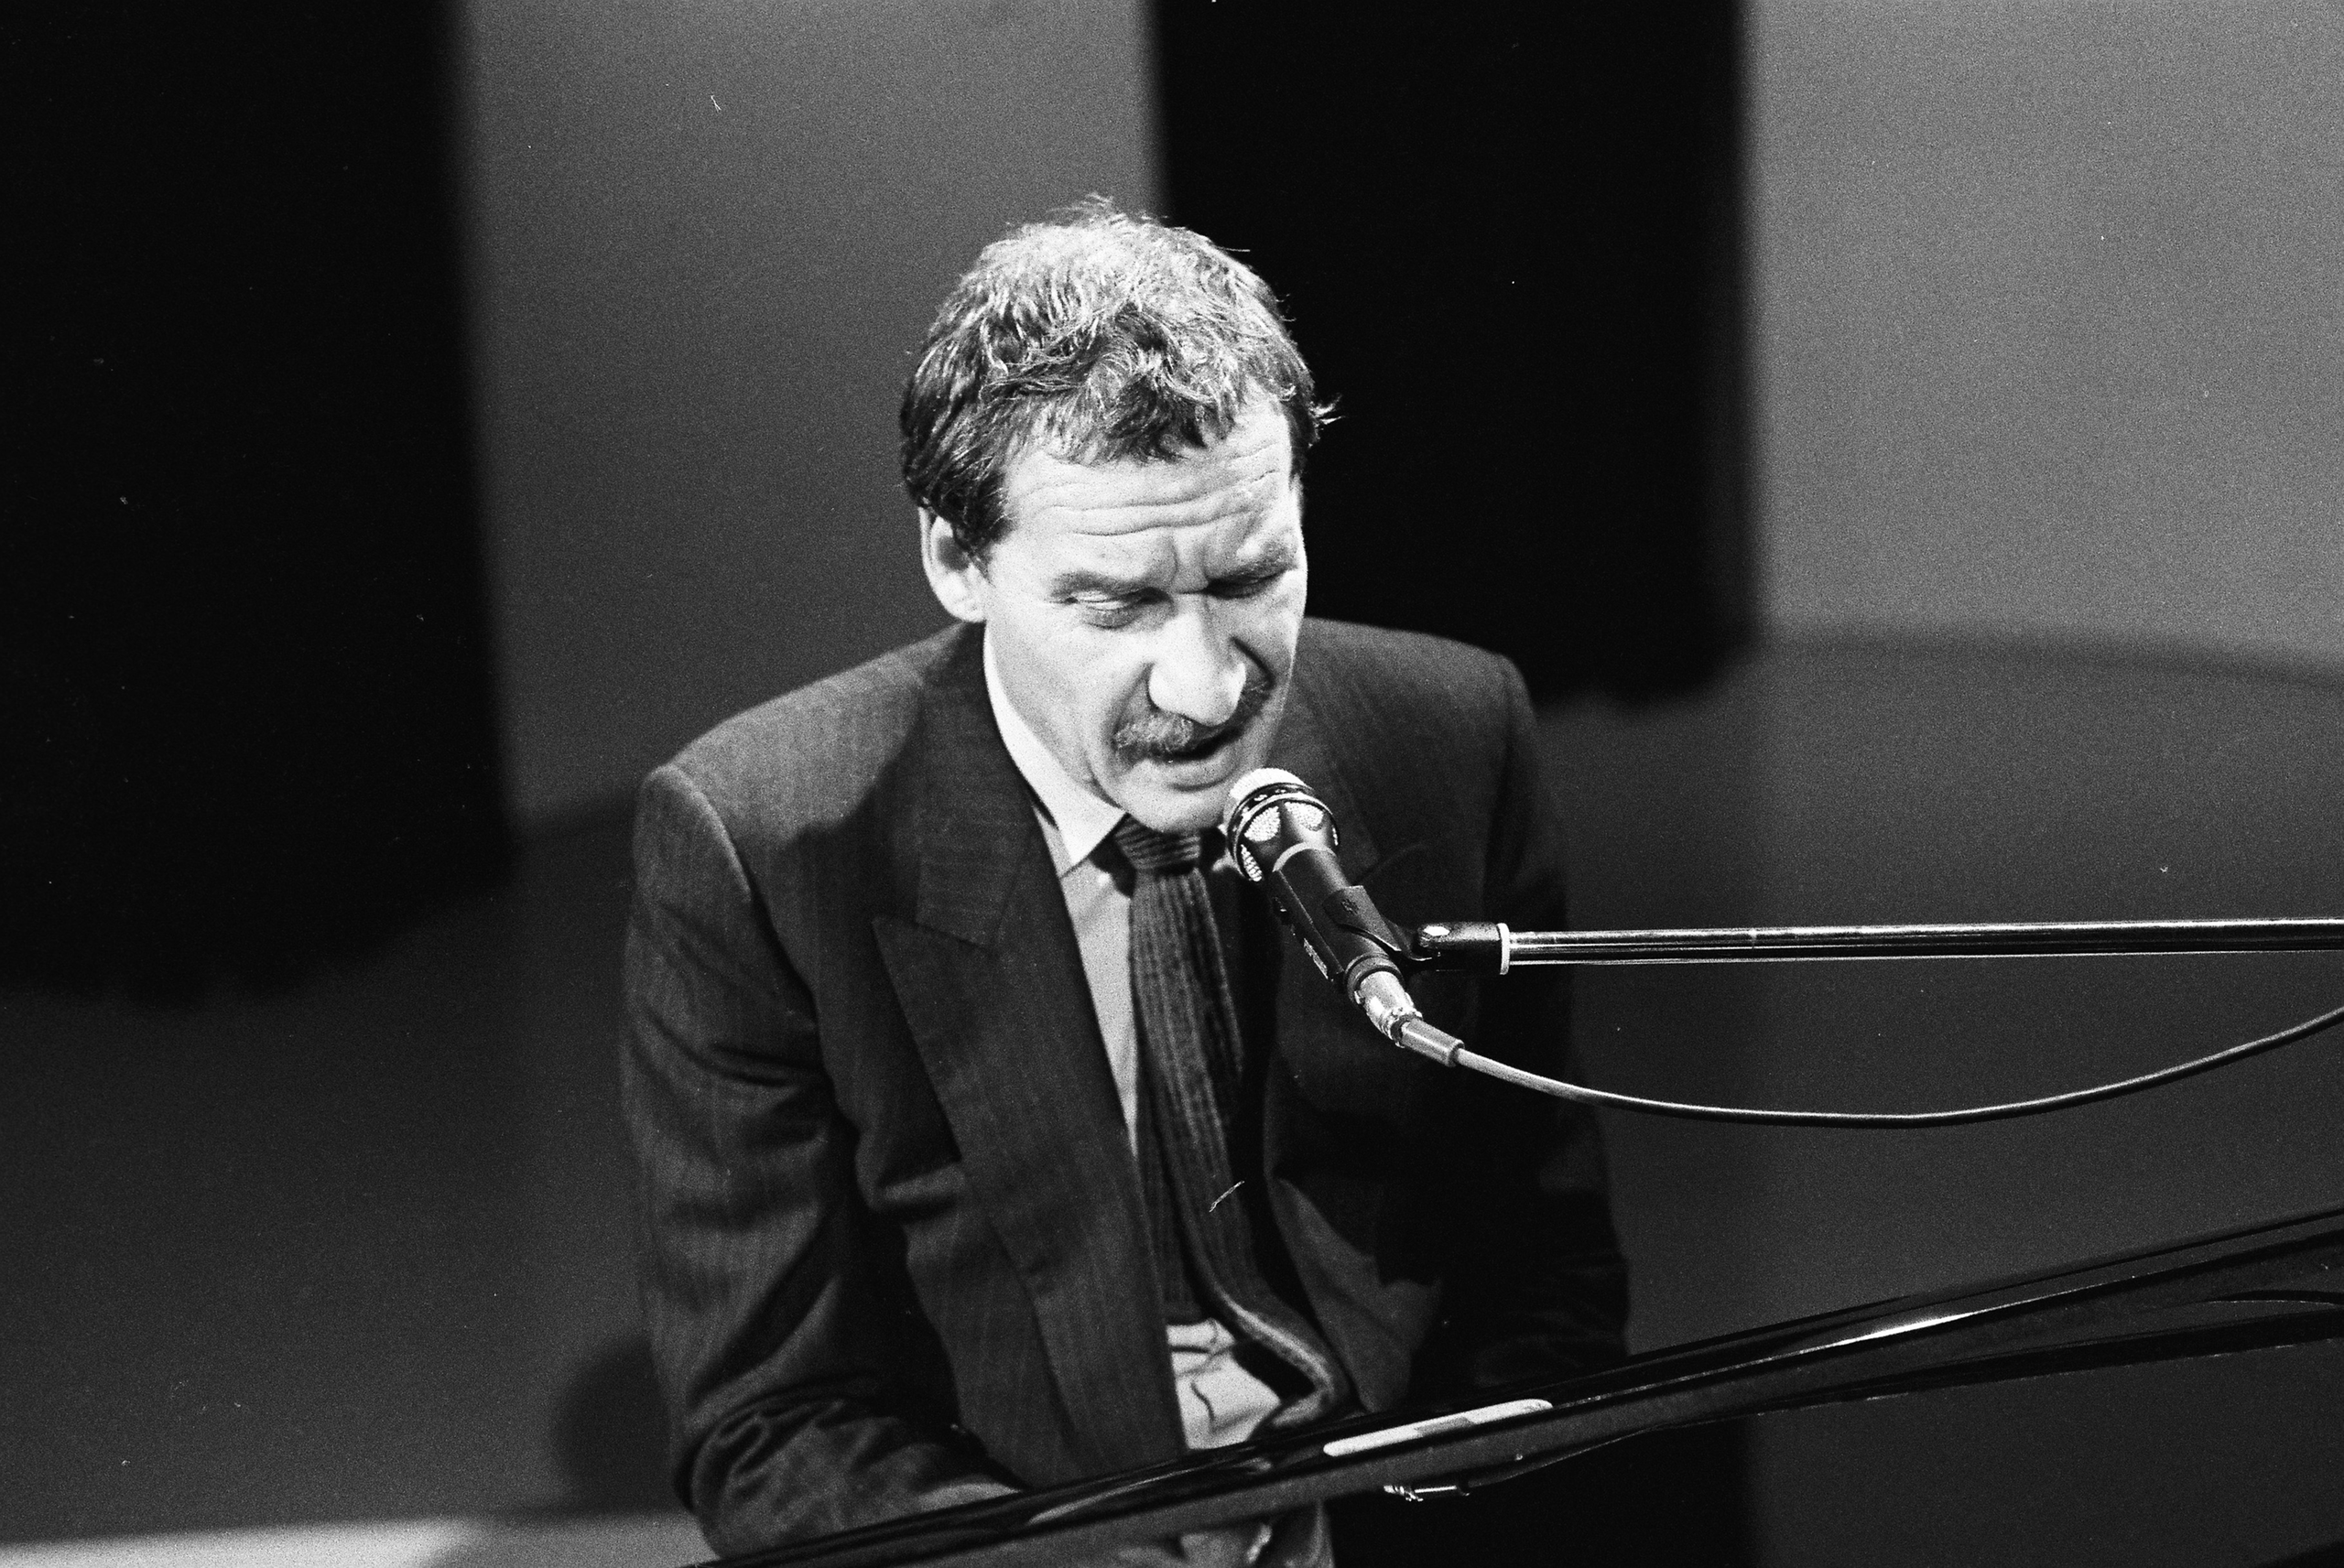 Un uomo in giacca e cravatta seduto al pianoforte, suona e canta in un teatro o studio televisivo.